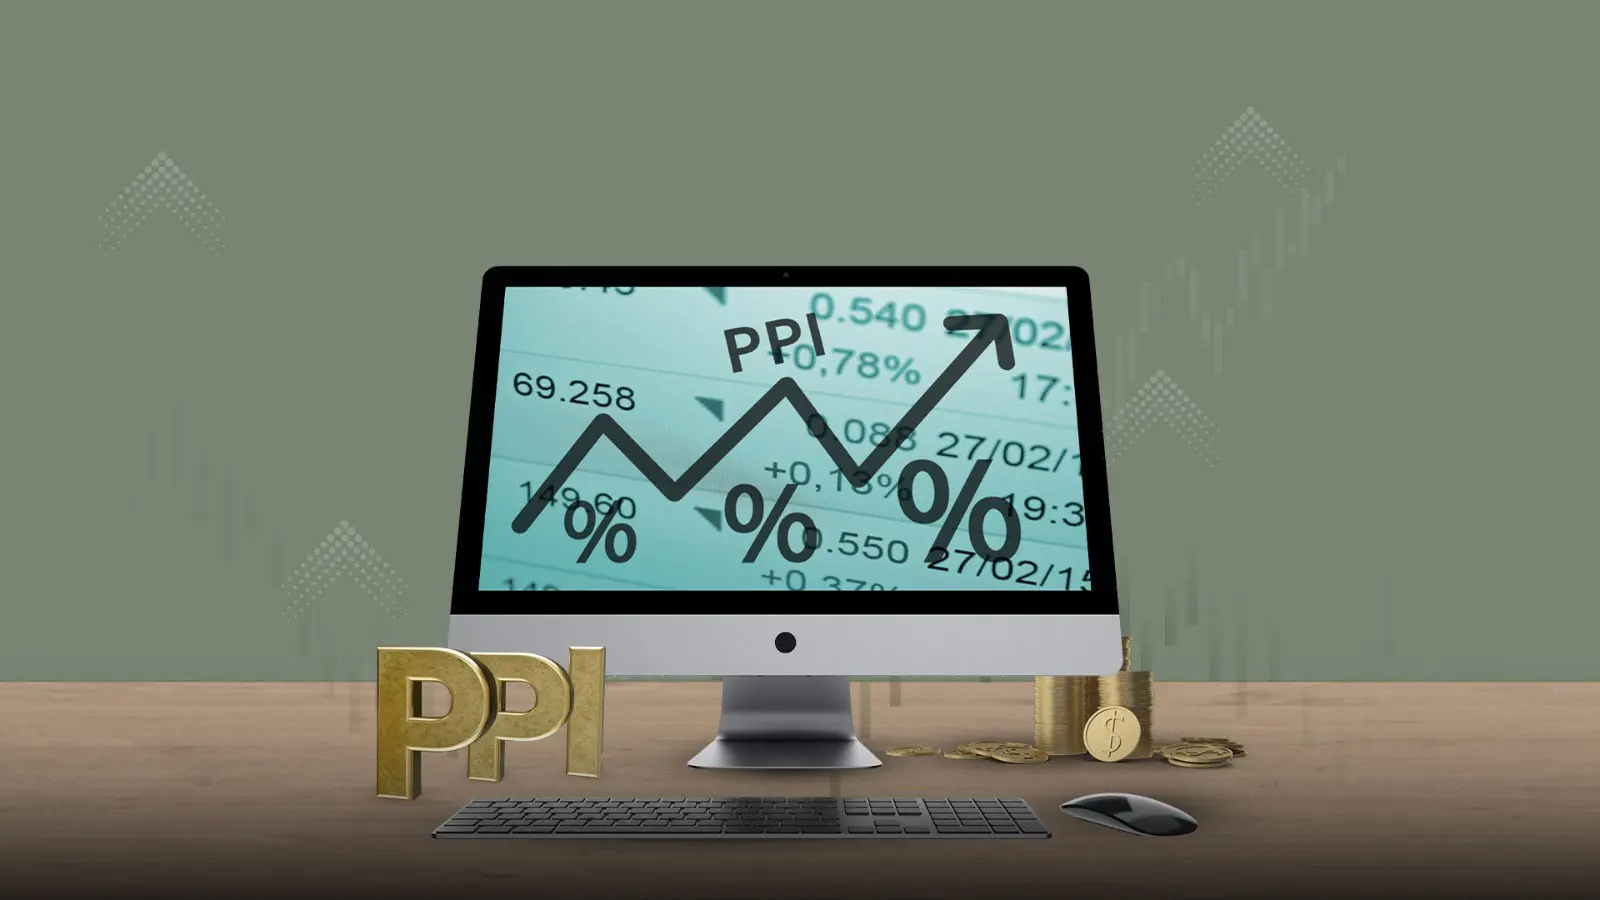 اسعار المنتجين ppi على شاشة حاسوب مع سهم مرتفع ومنخفض